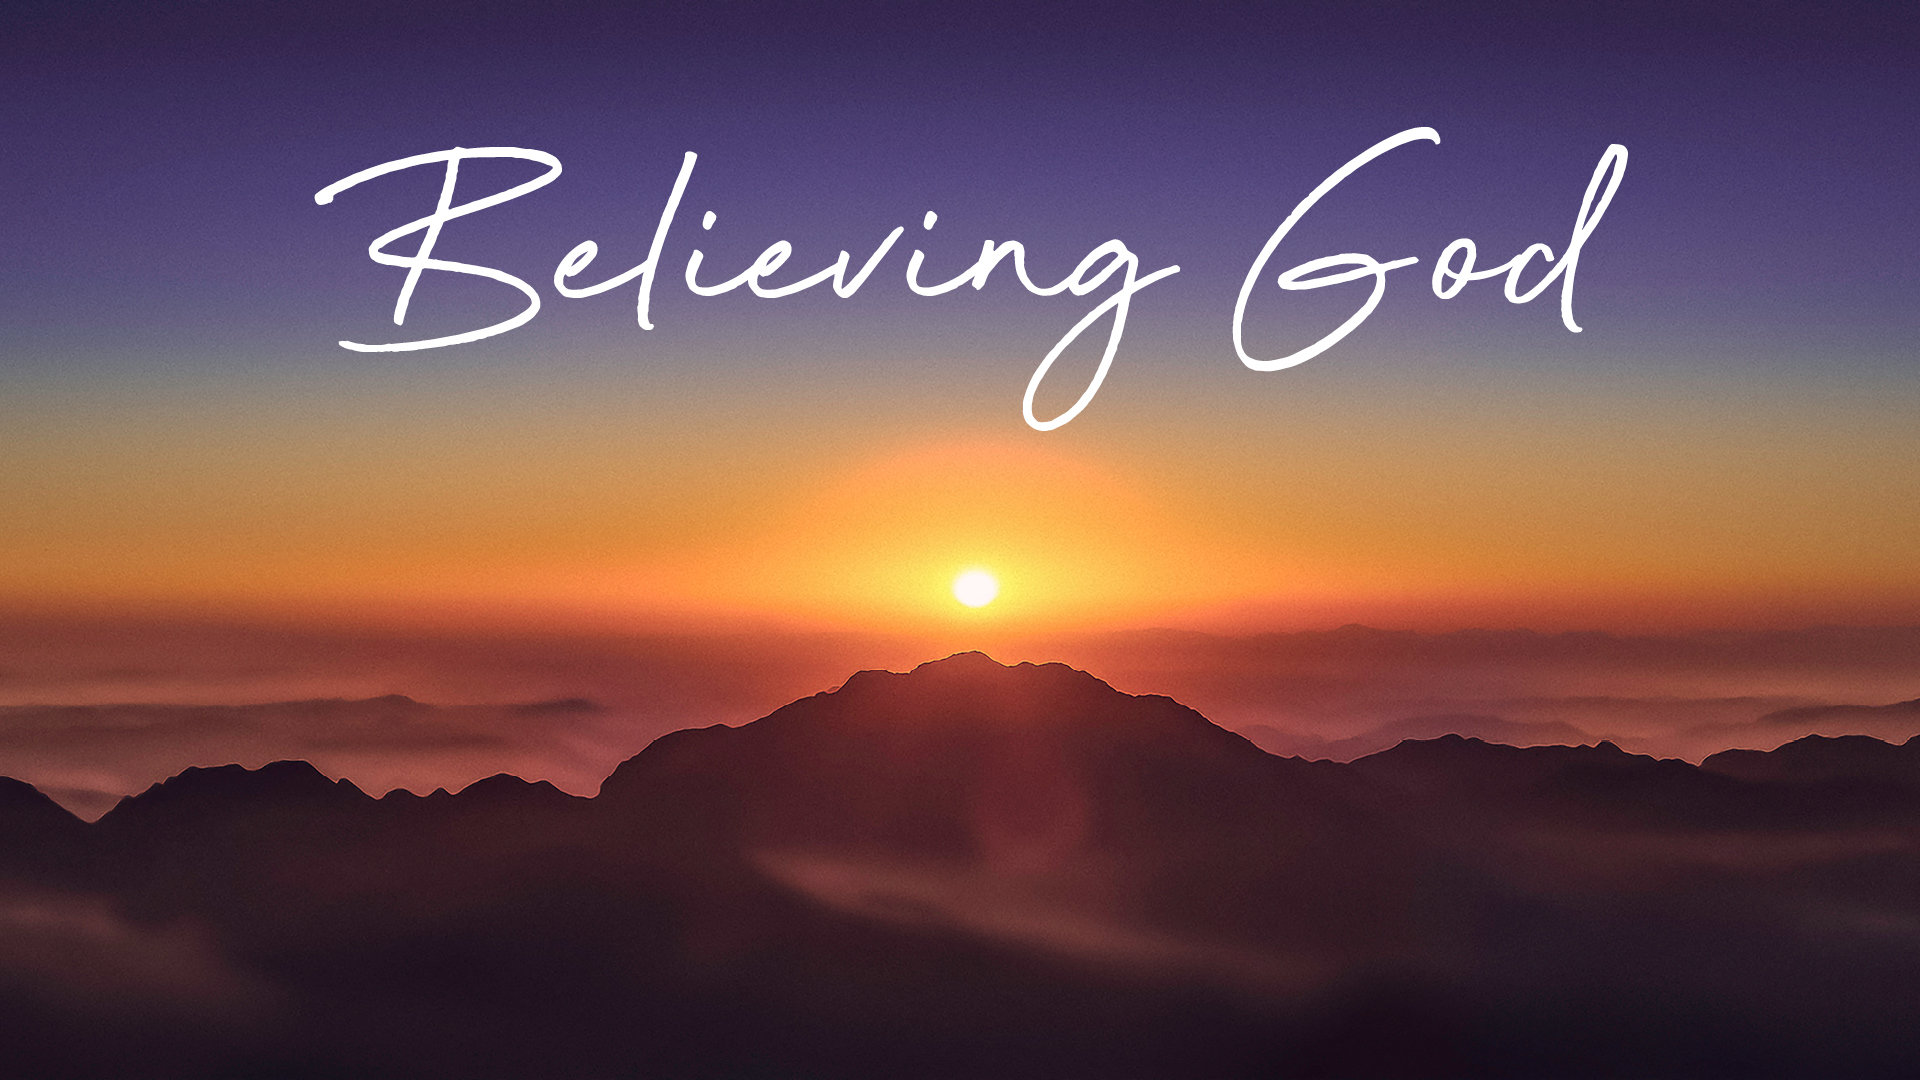 belief in god